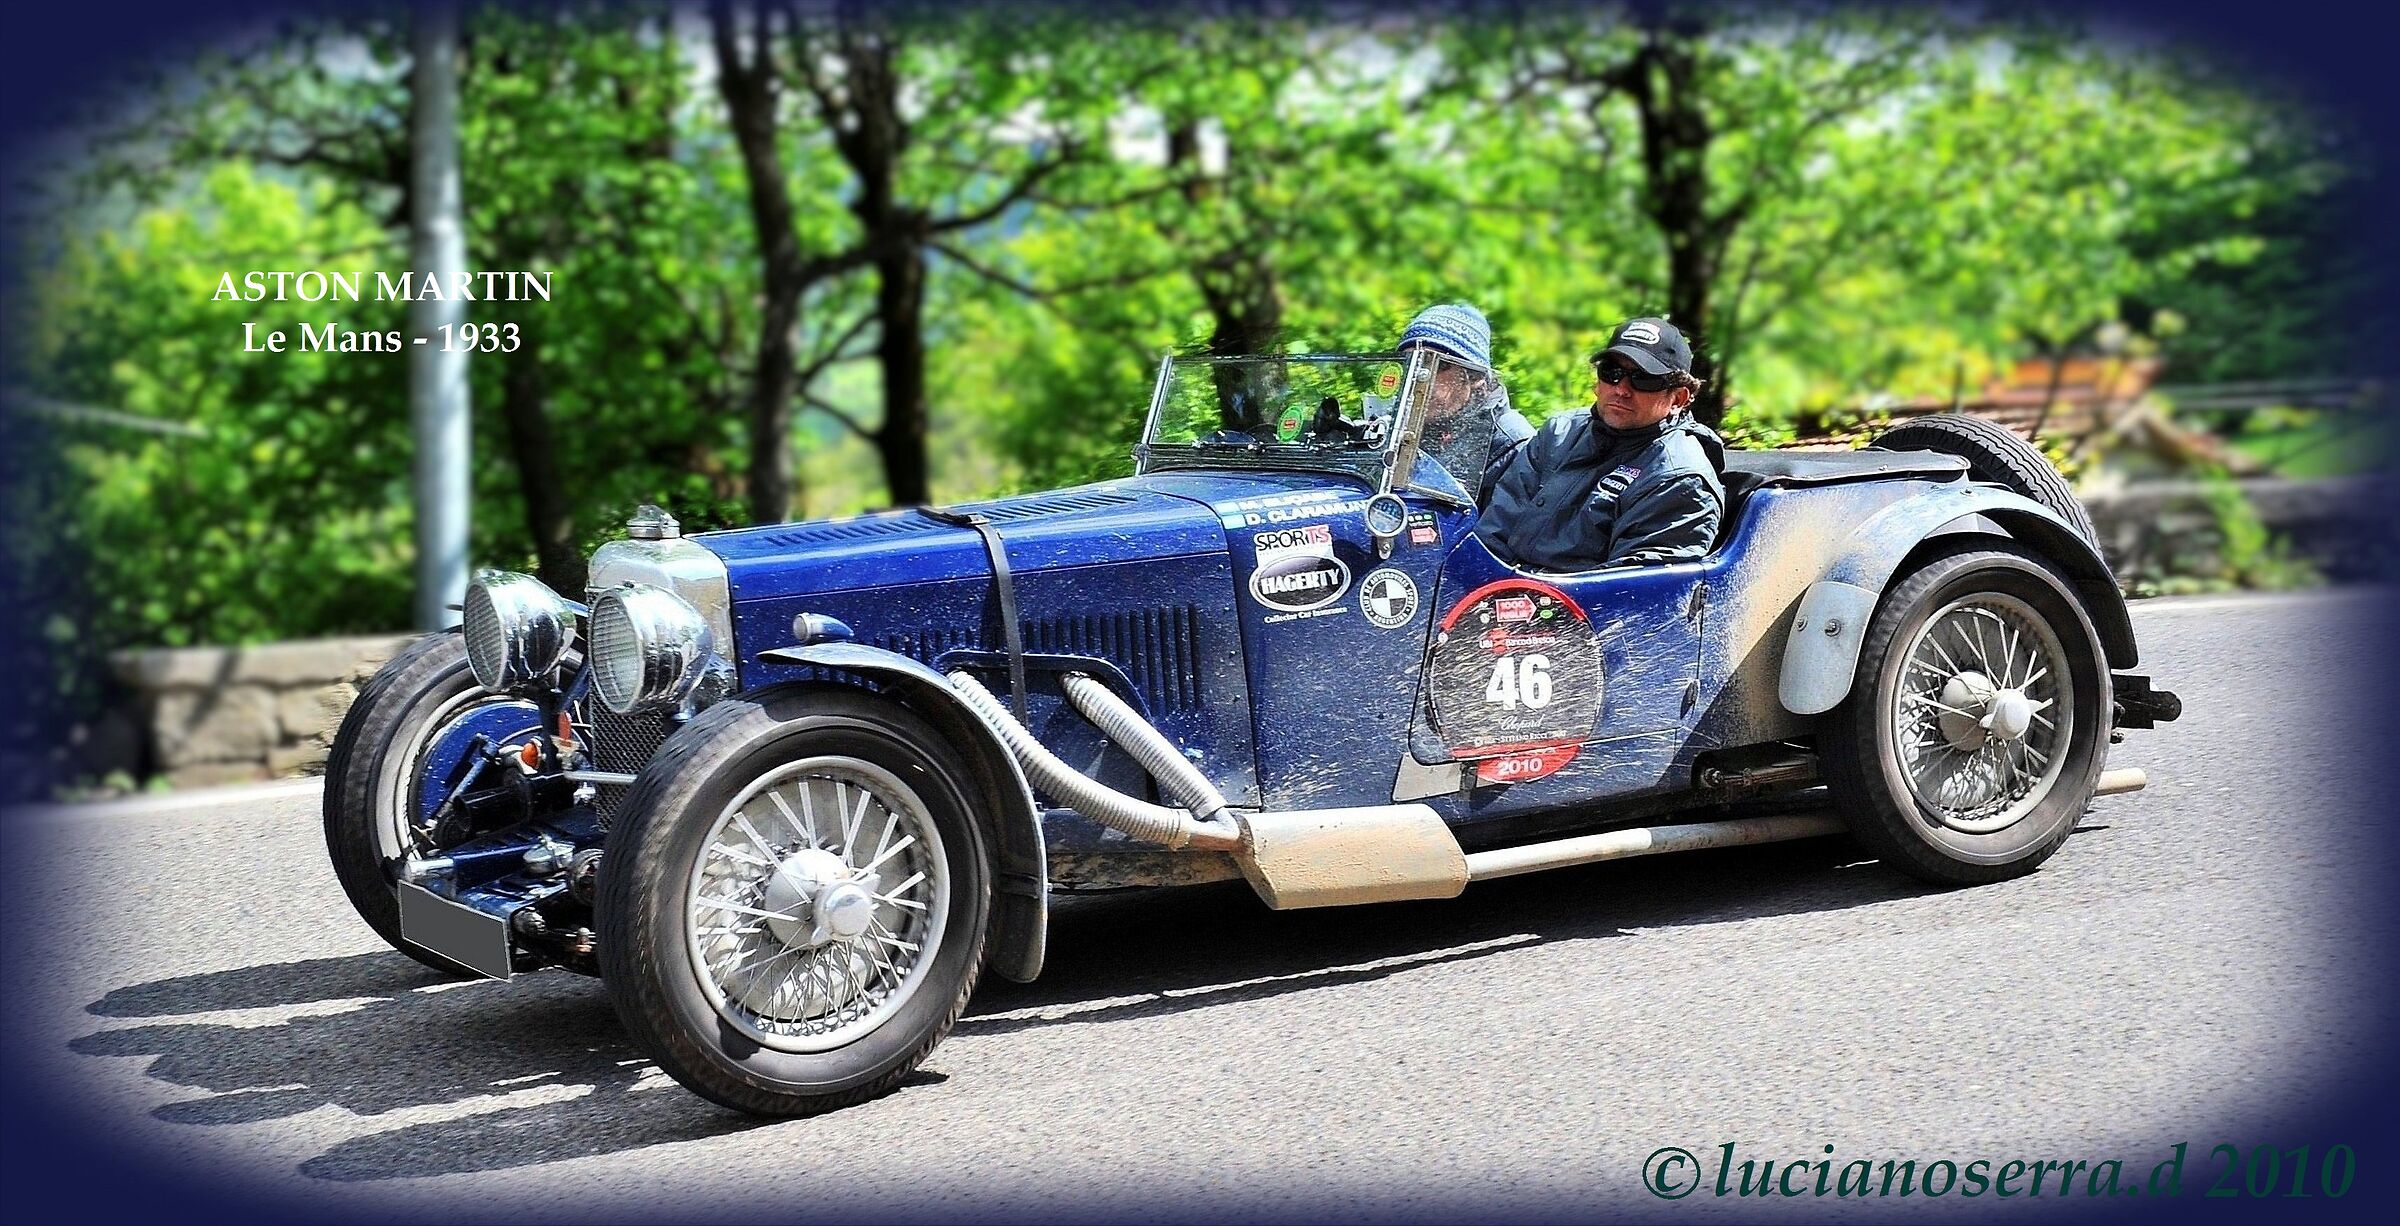 Aston Martin Le Mans - 1933...